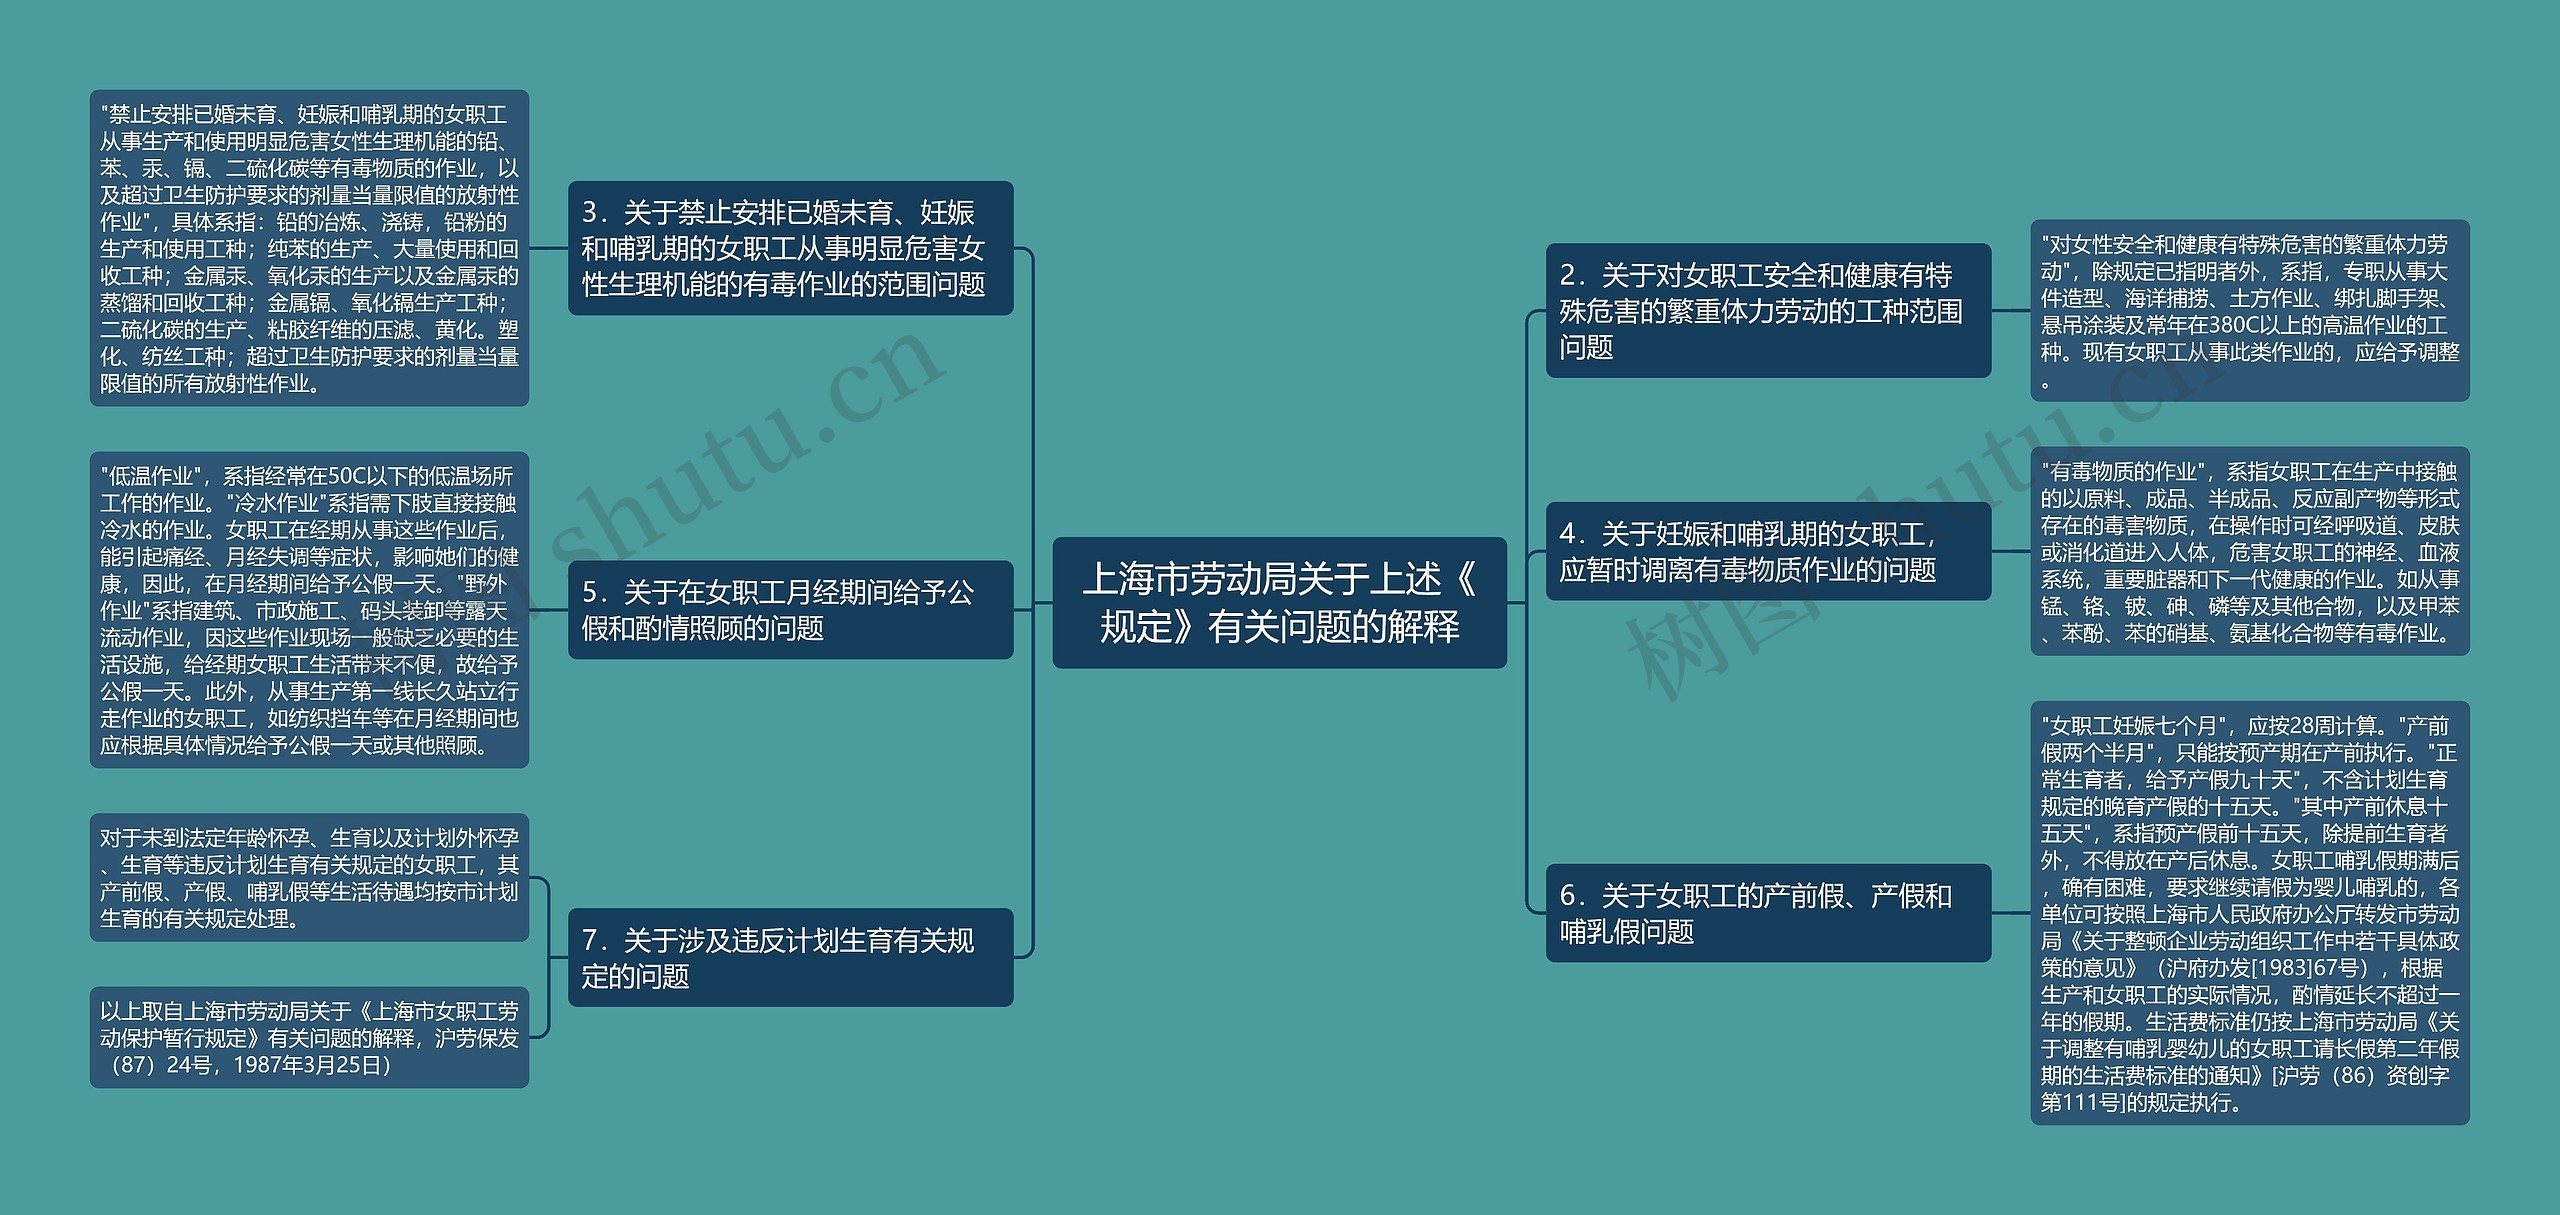 上海市劳动局关于上述《规定》有关问题的解释